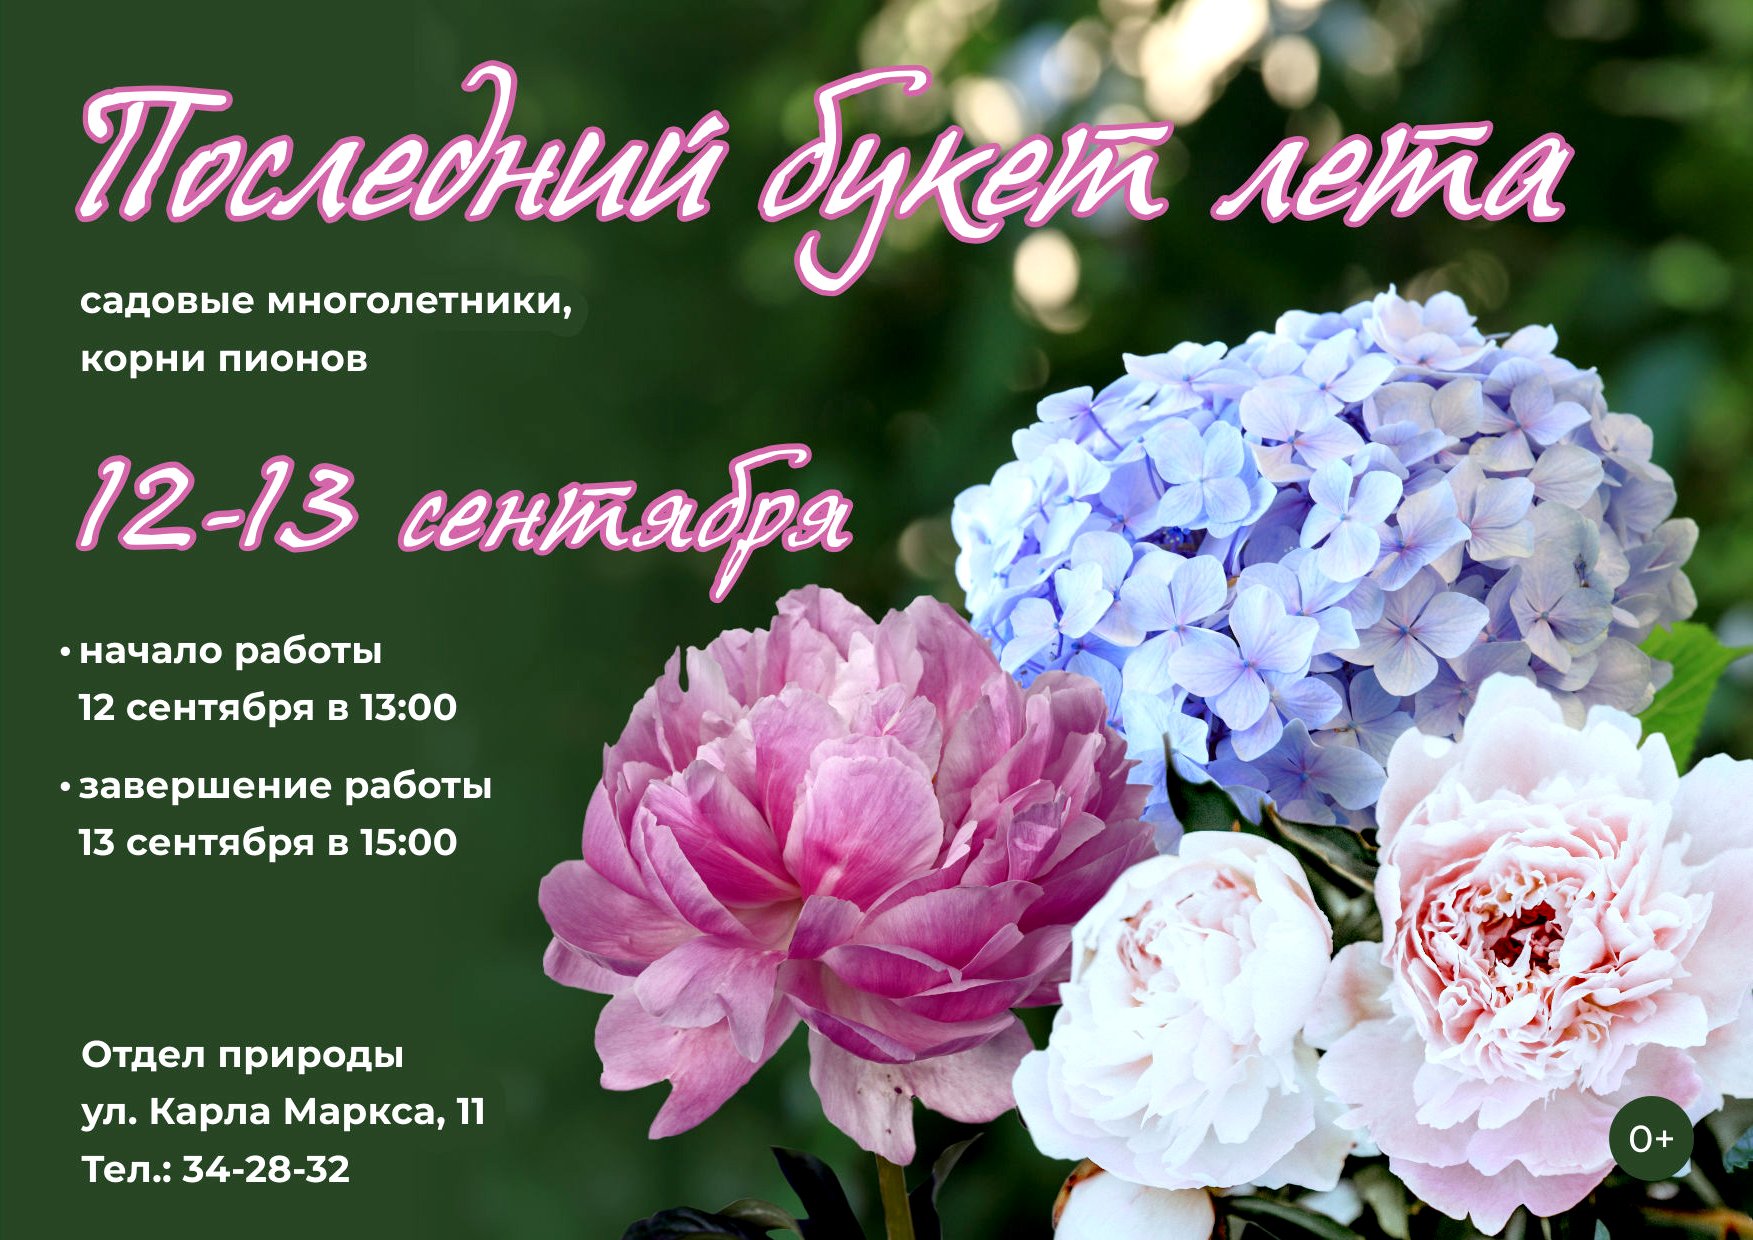 В отделе природы пройдет выставка цветов “Последний букет лета”